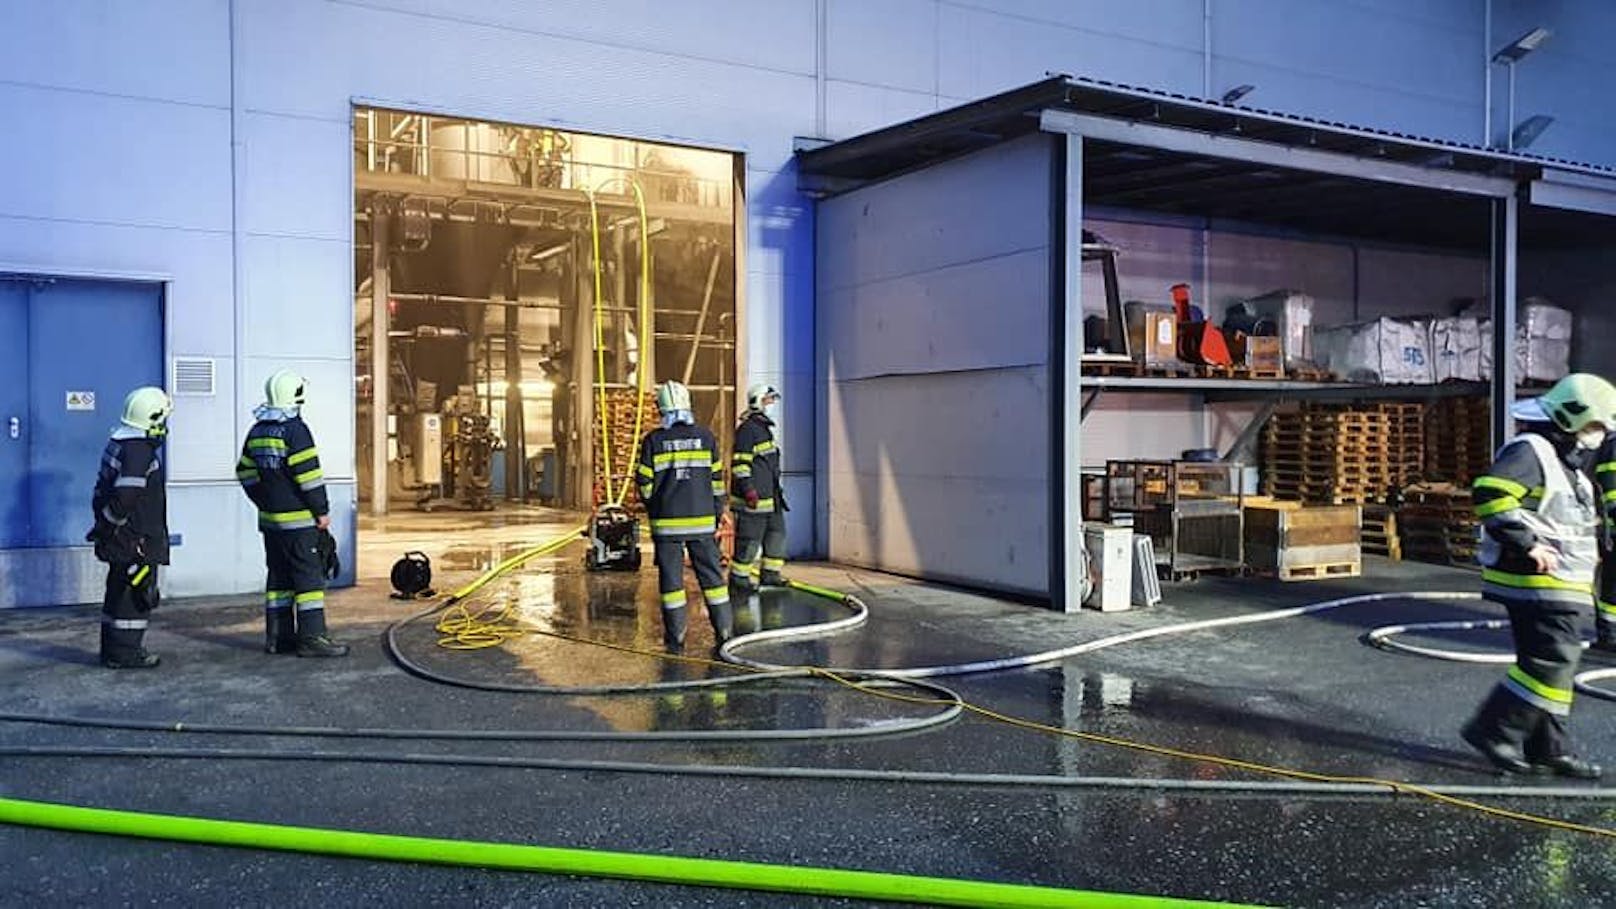 Bilder des Feuerwehreinsatzes in Kammern im Liesingtal am 6. Dezember 2020